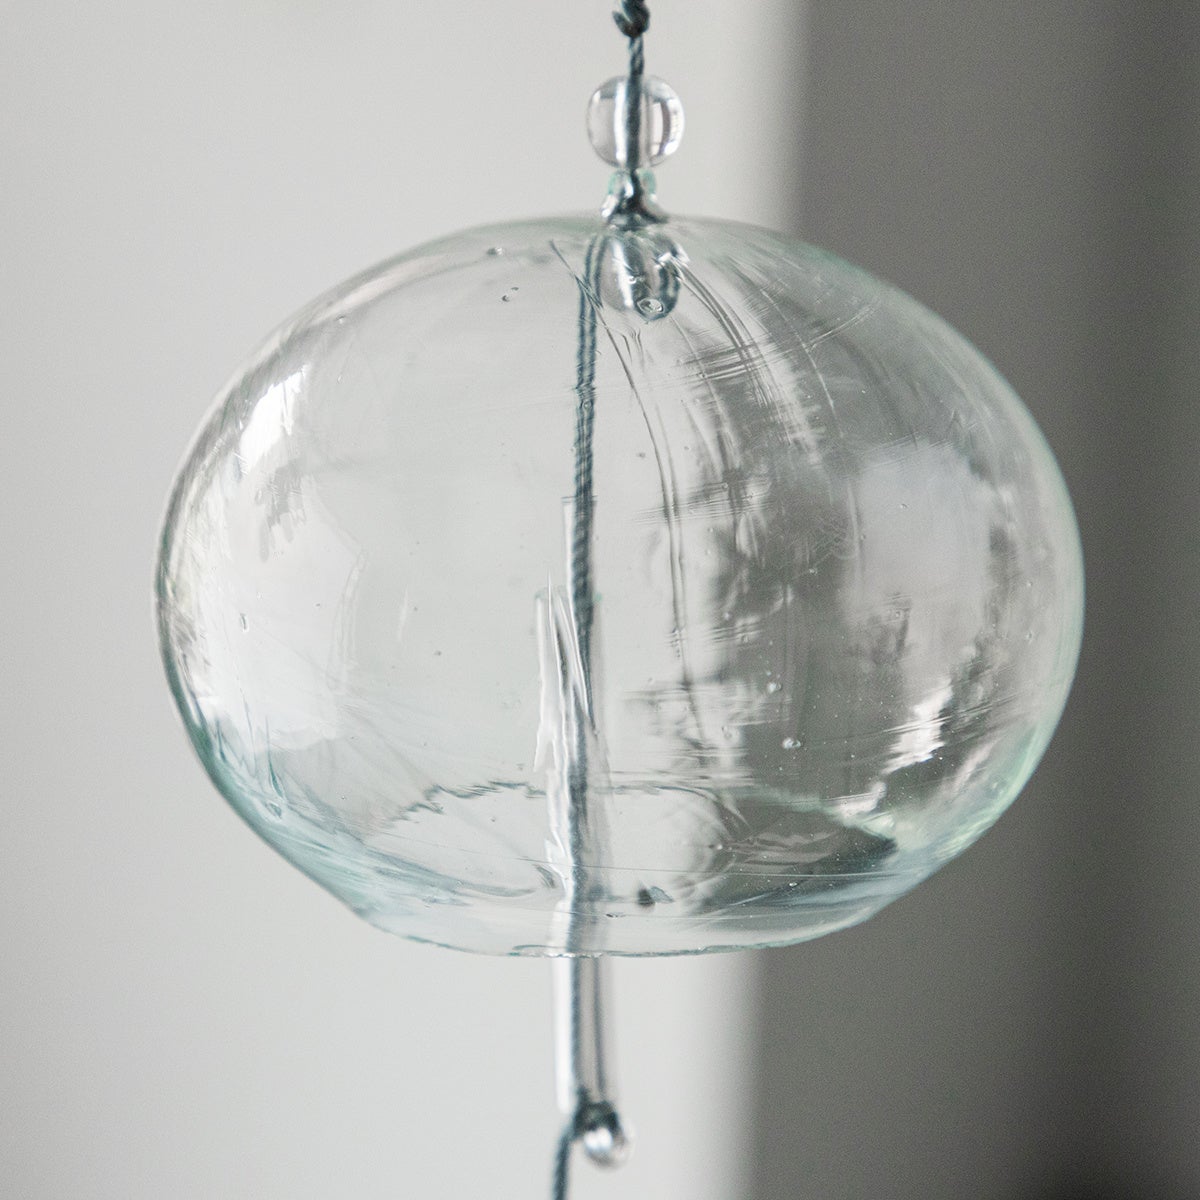 ガラスの泡やシワは、異なる個性 として、ハンドメイドならではの魅力とTSUCHI-YAでは考えています